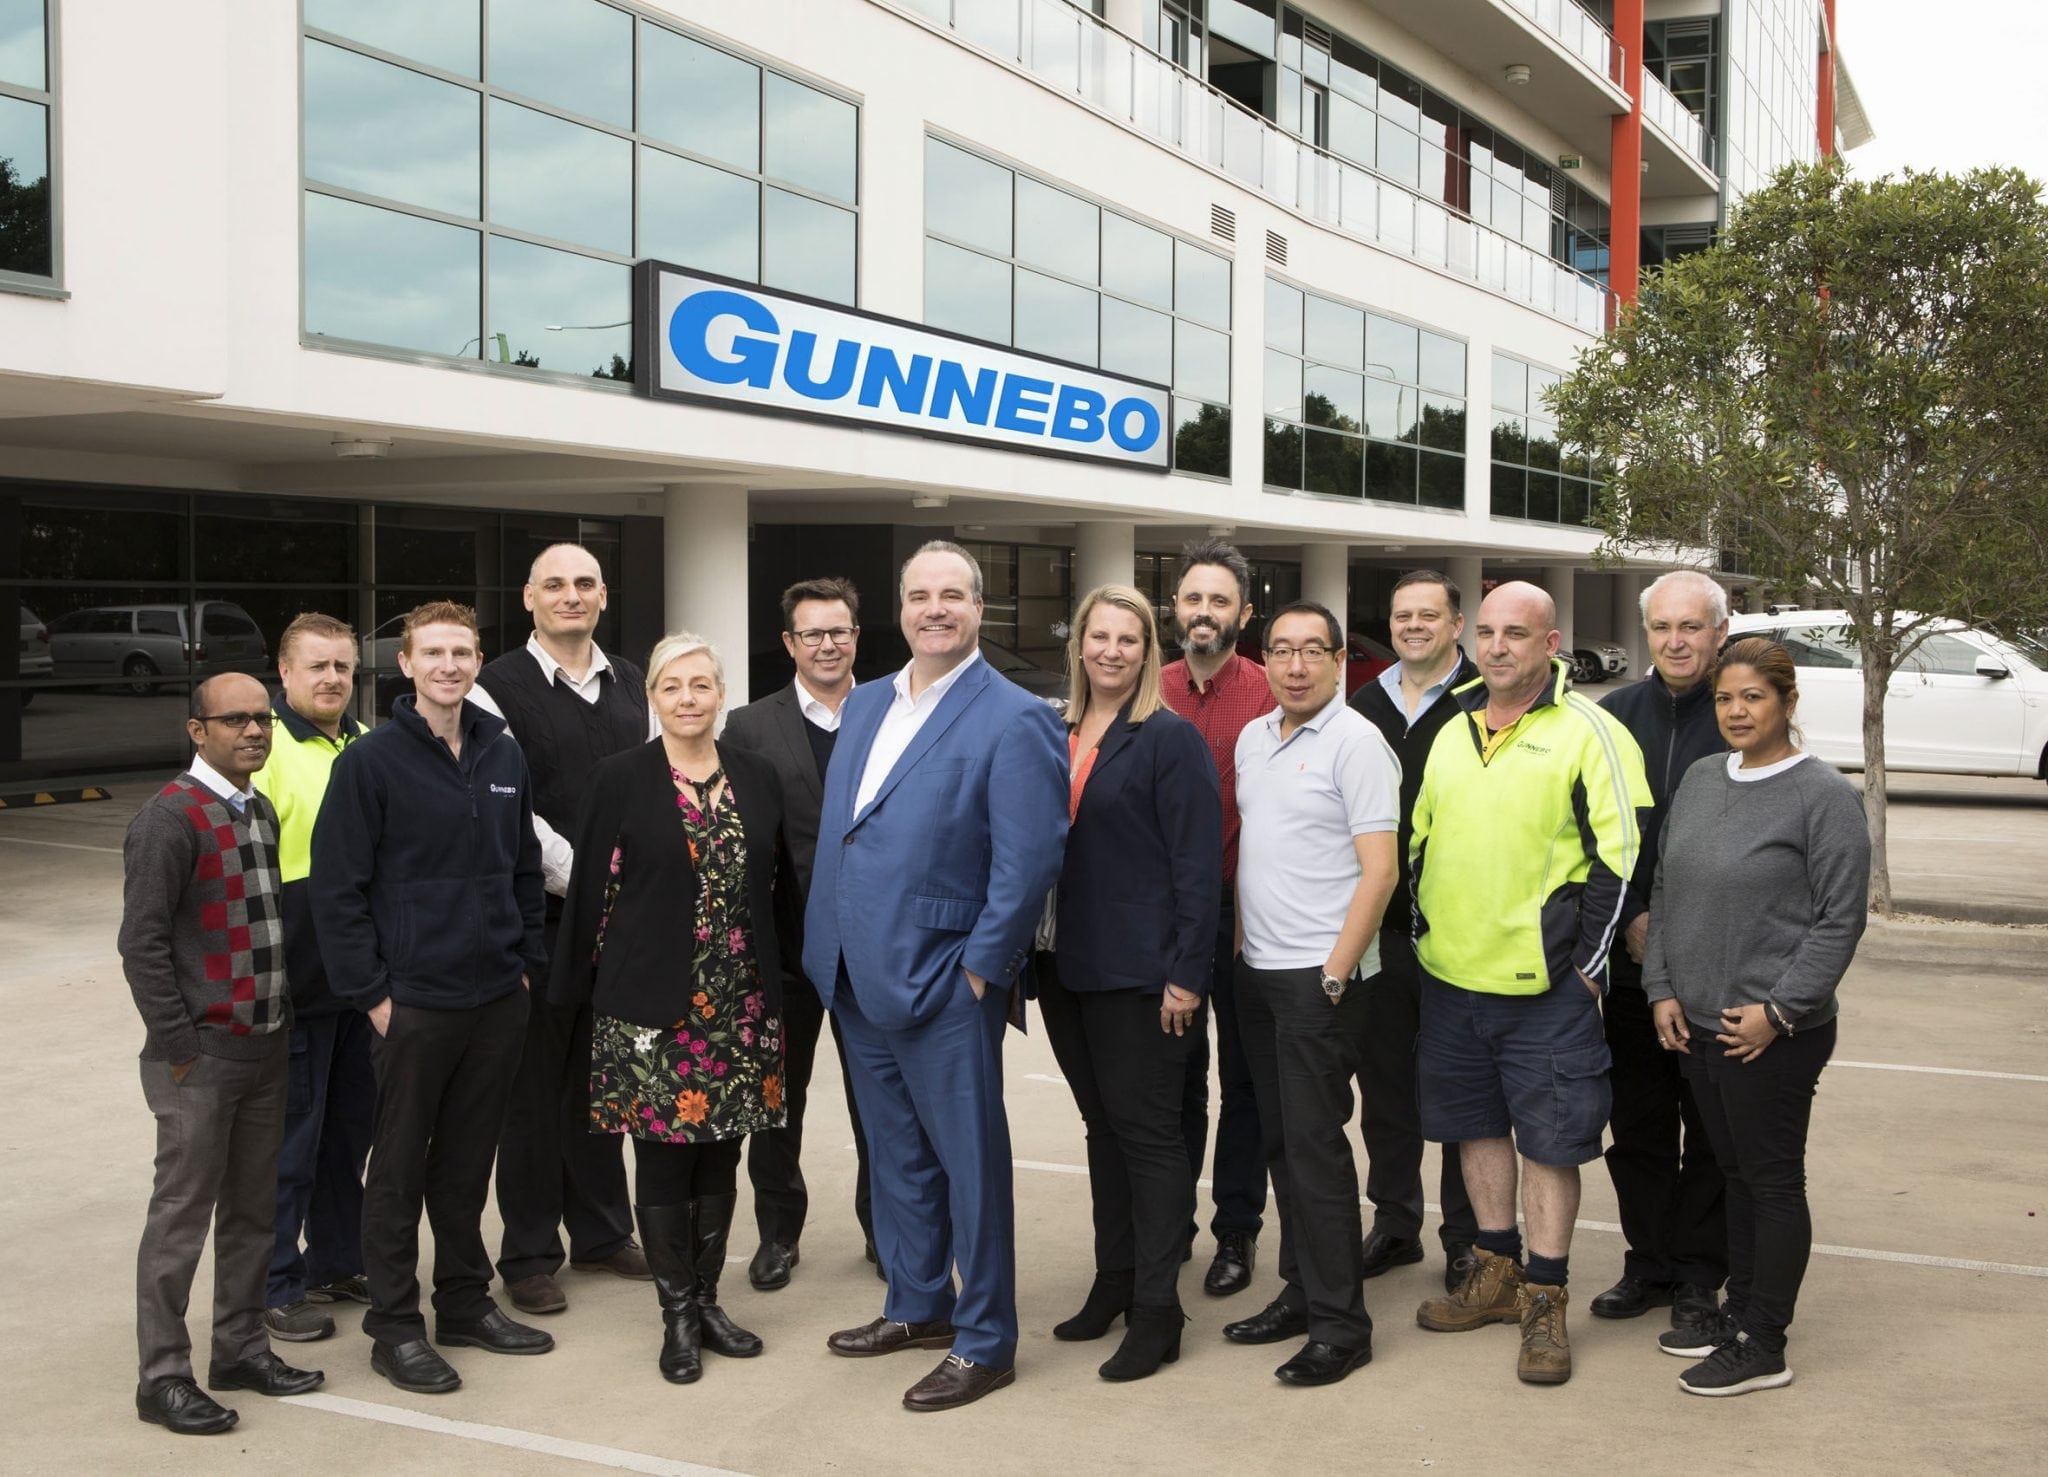 Gunnebo - The Australian Business Award 2018